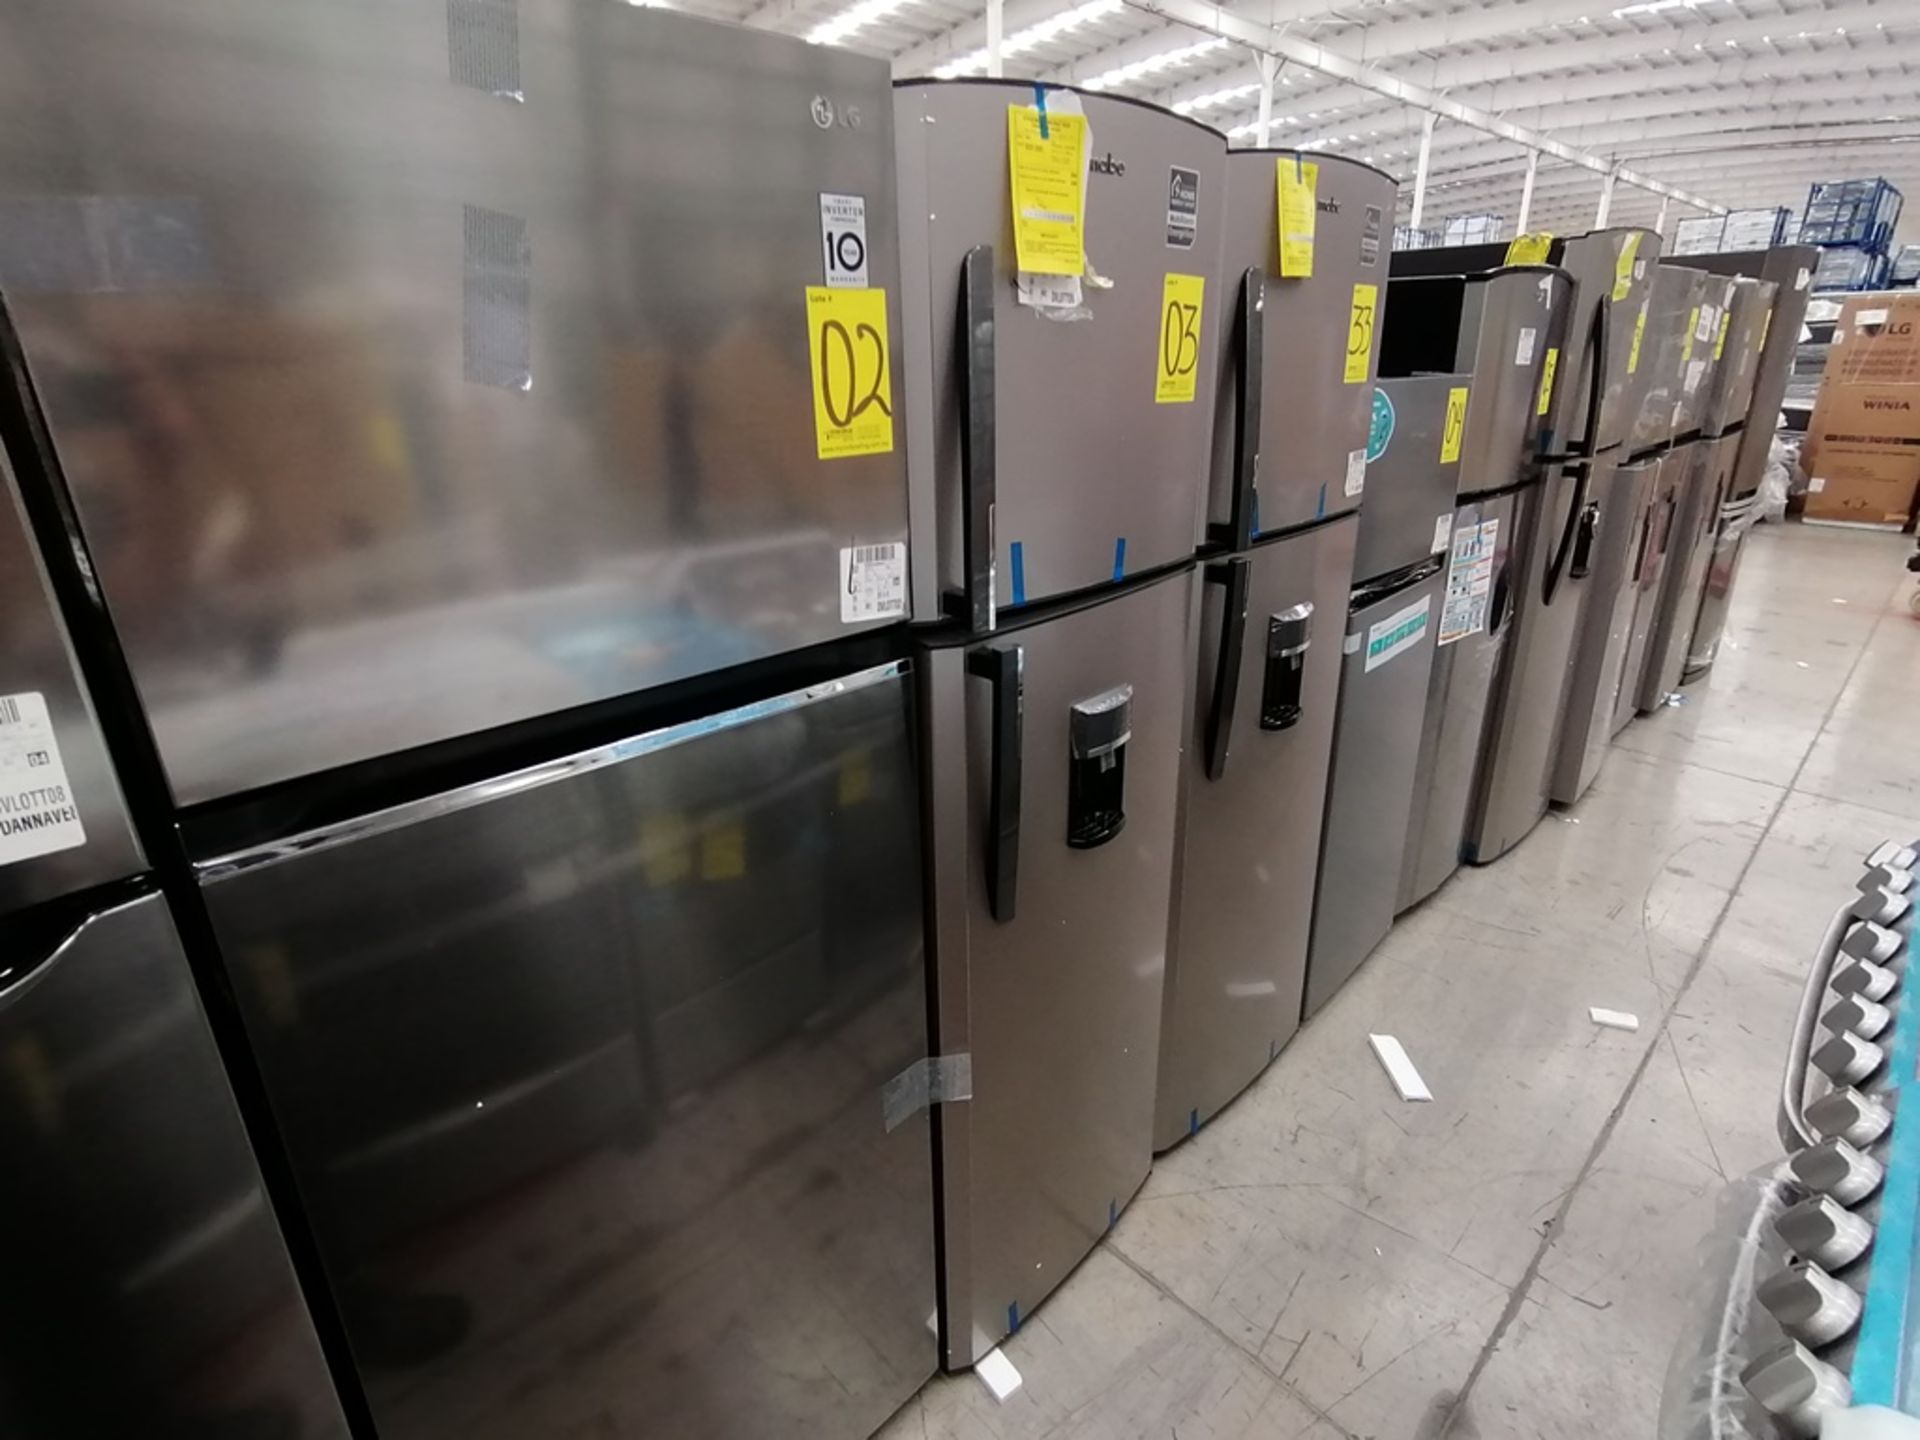 1 Refrigerador con Dispensador de Agua Marca Mabe, Color Gris, Modelo RMA300FJMR, Serie 2112B707142 - Image 8 of 13